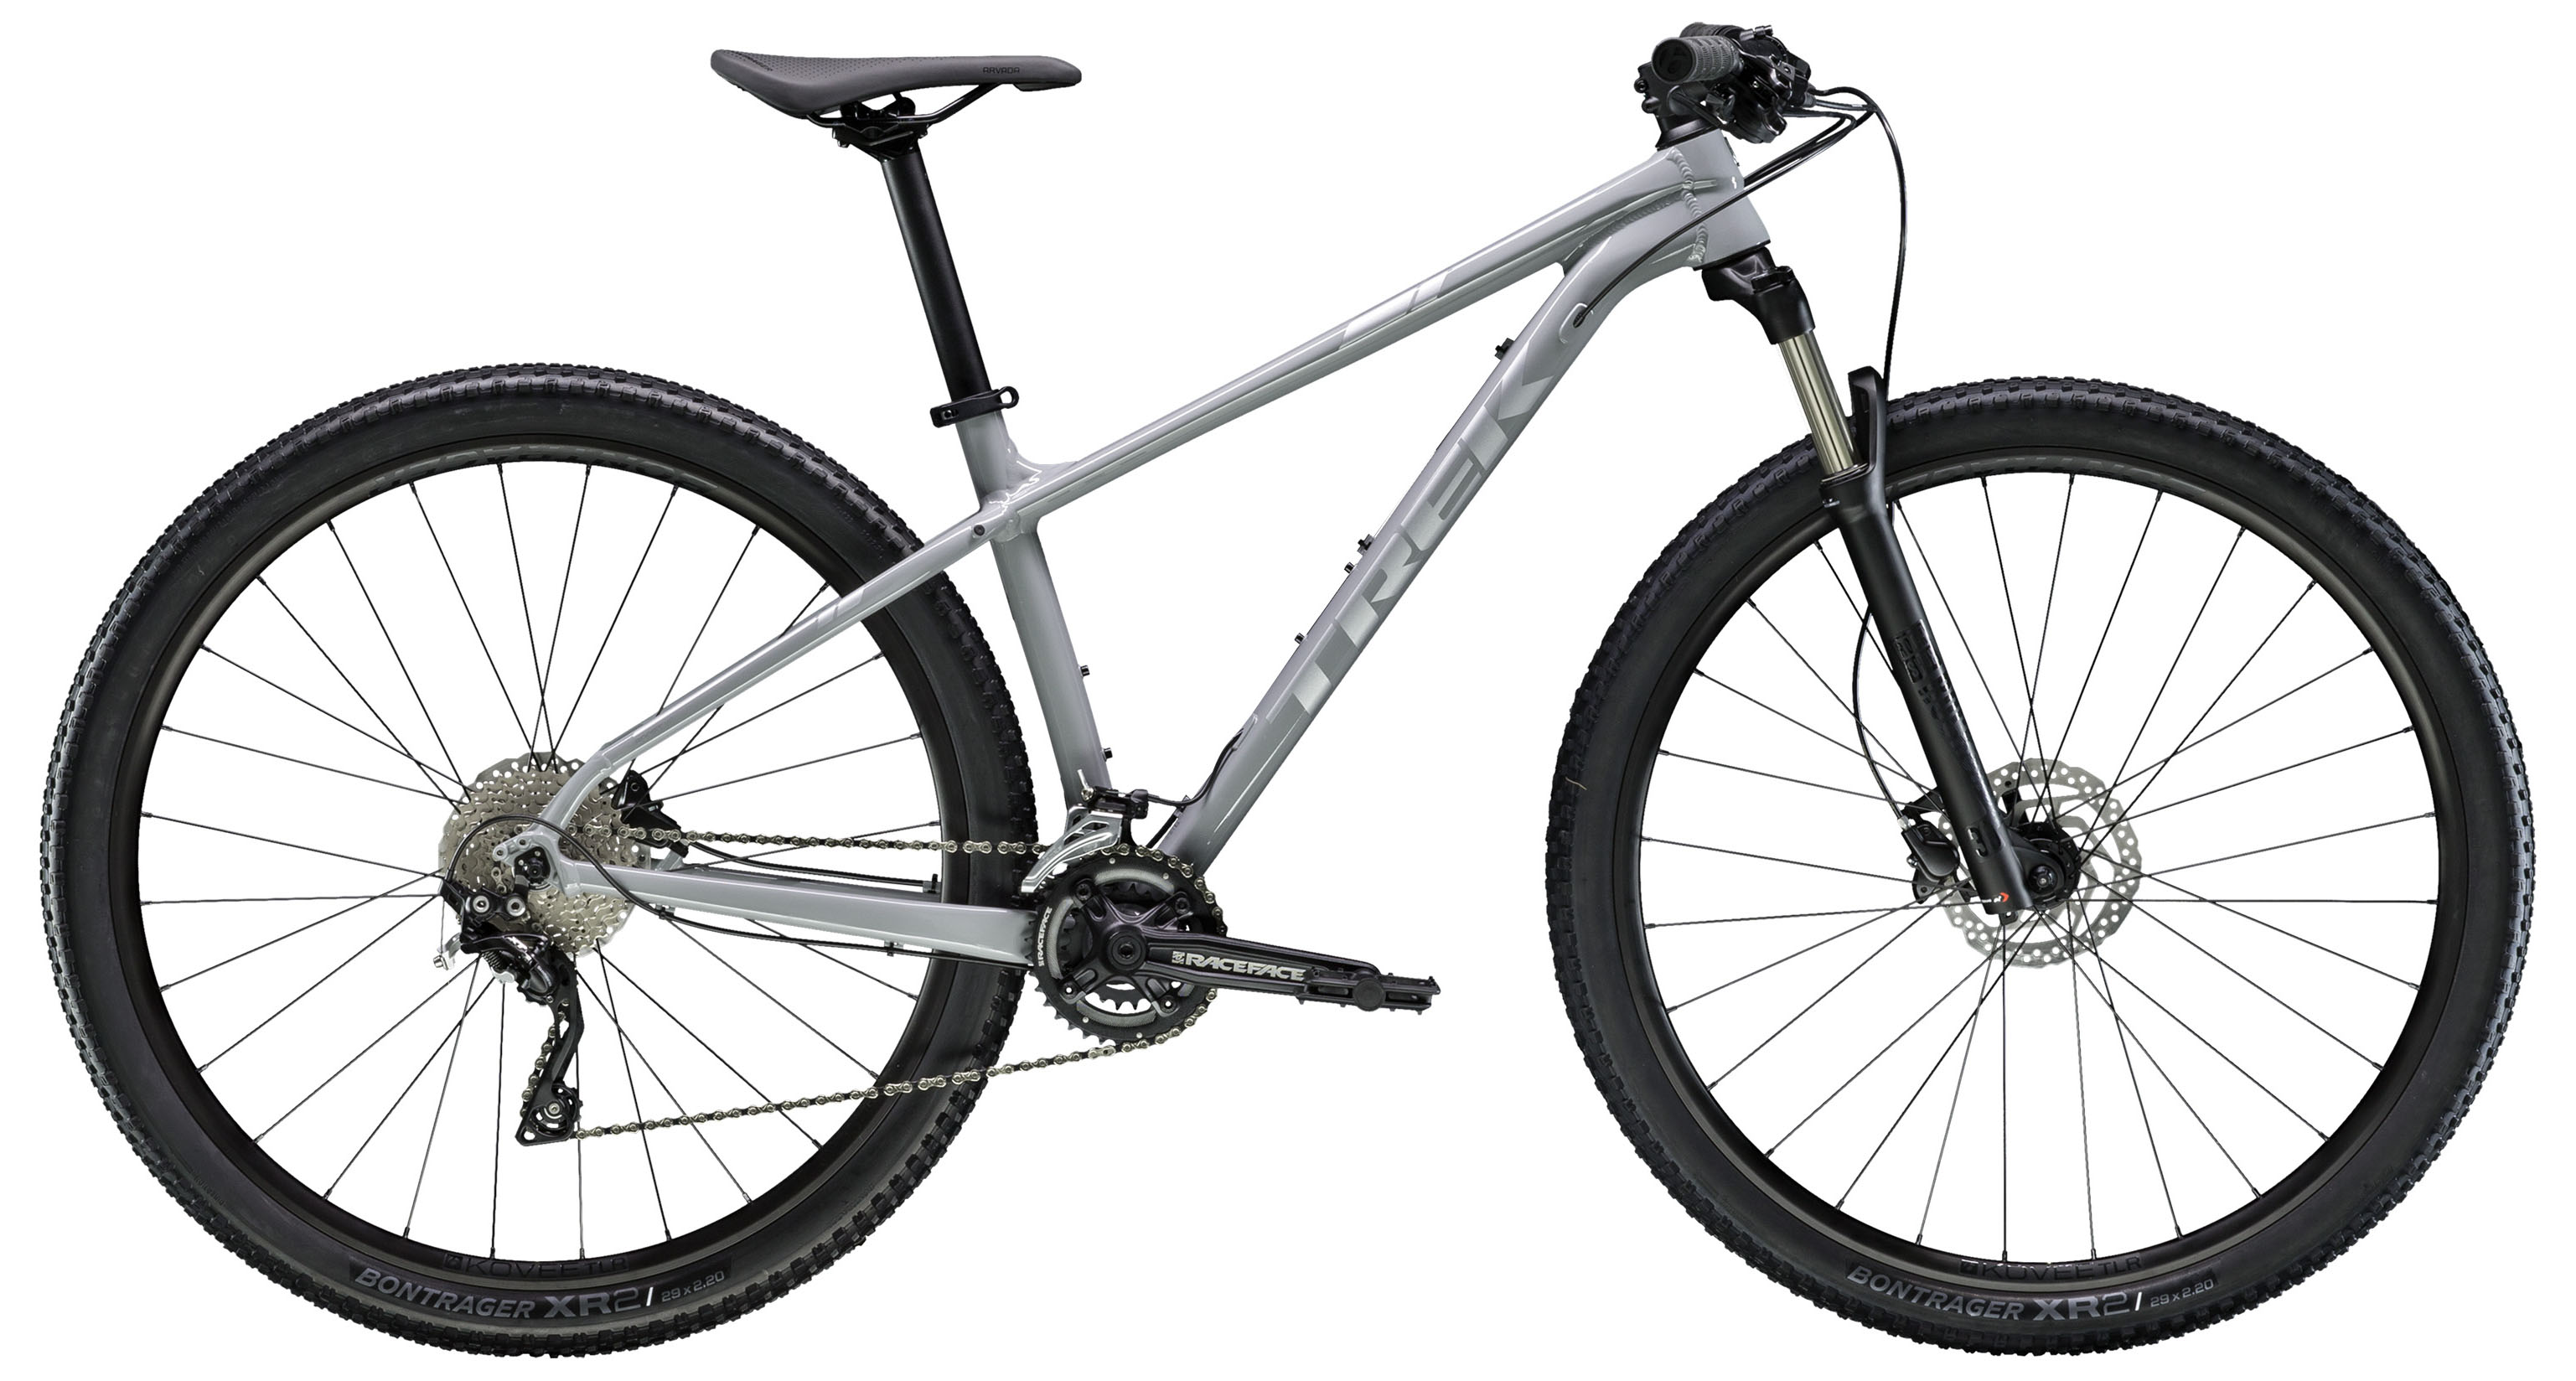  Отзывы о Горном велосипеде Trek X-Caliber 8 29 2019